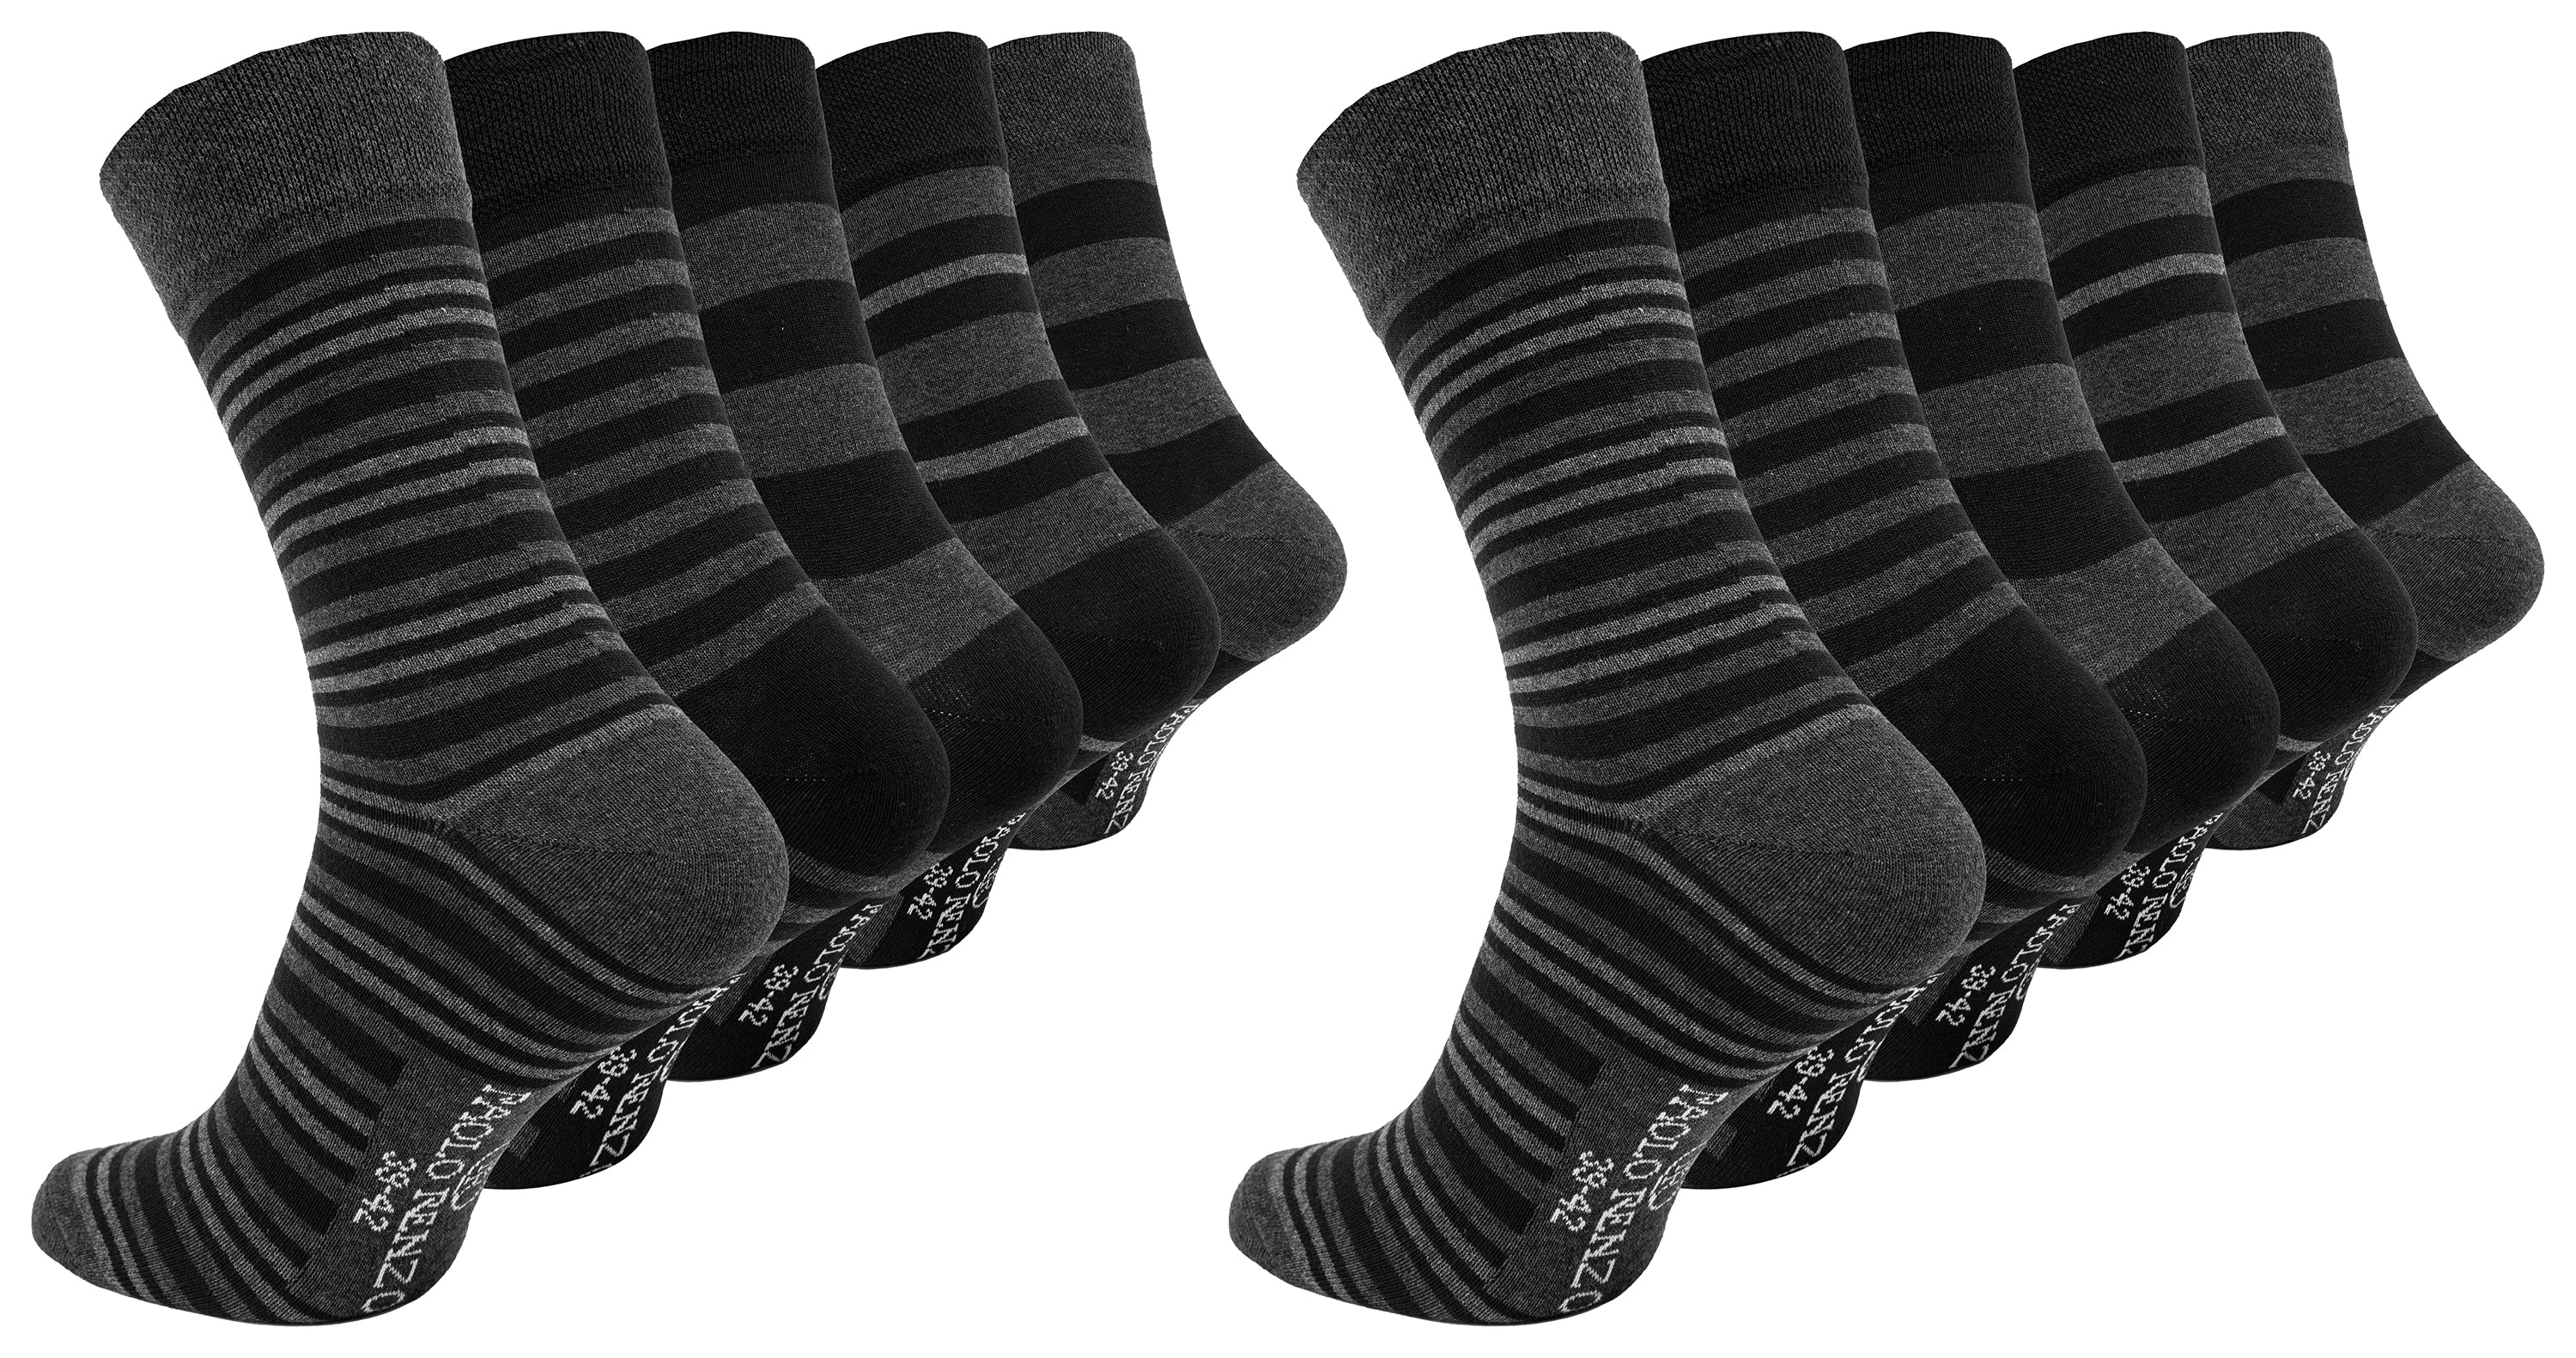 Paolo Renzo® Business Socke gemustert 5/10 oder 15 Paar - Größen 39/42 und 43/46